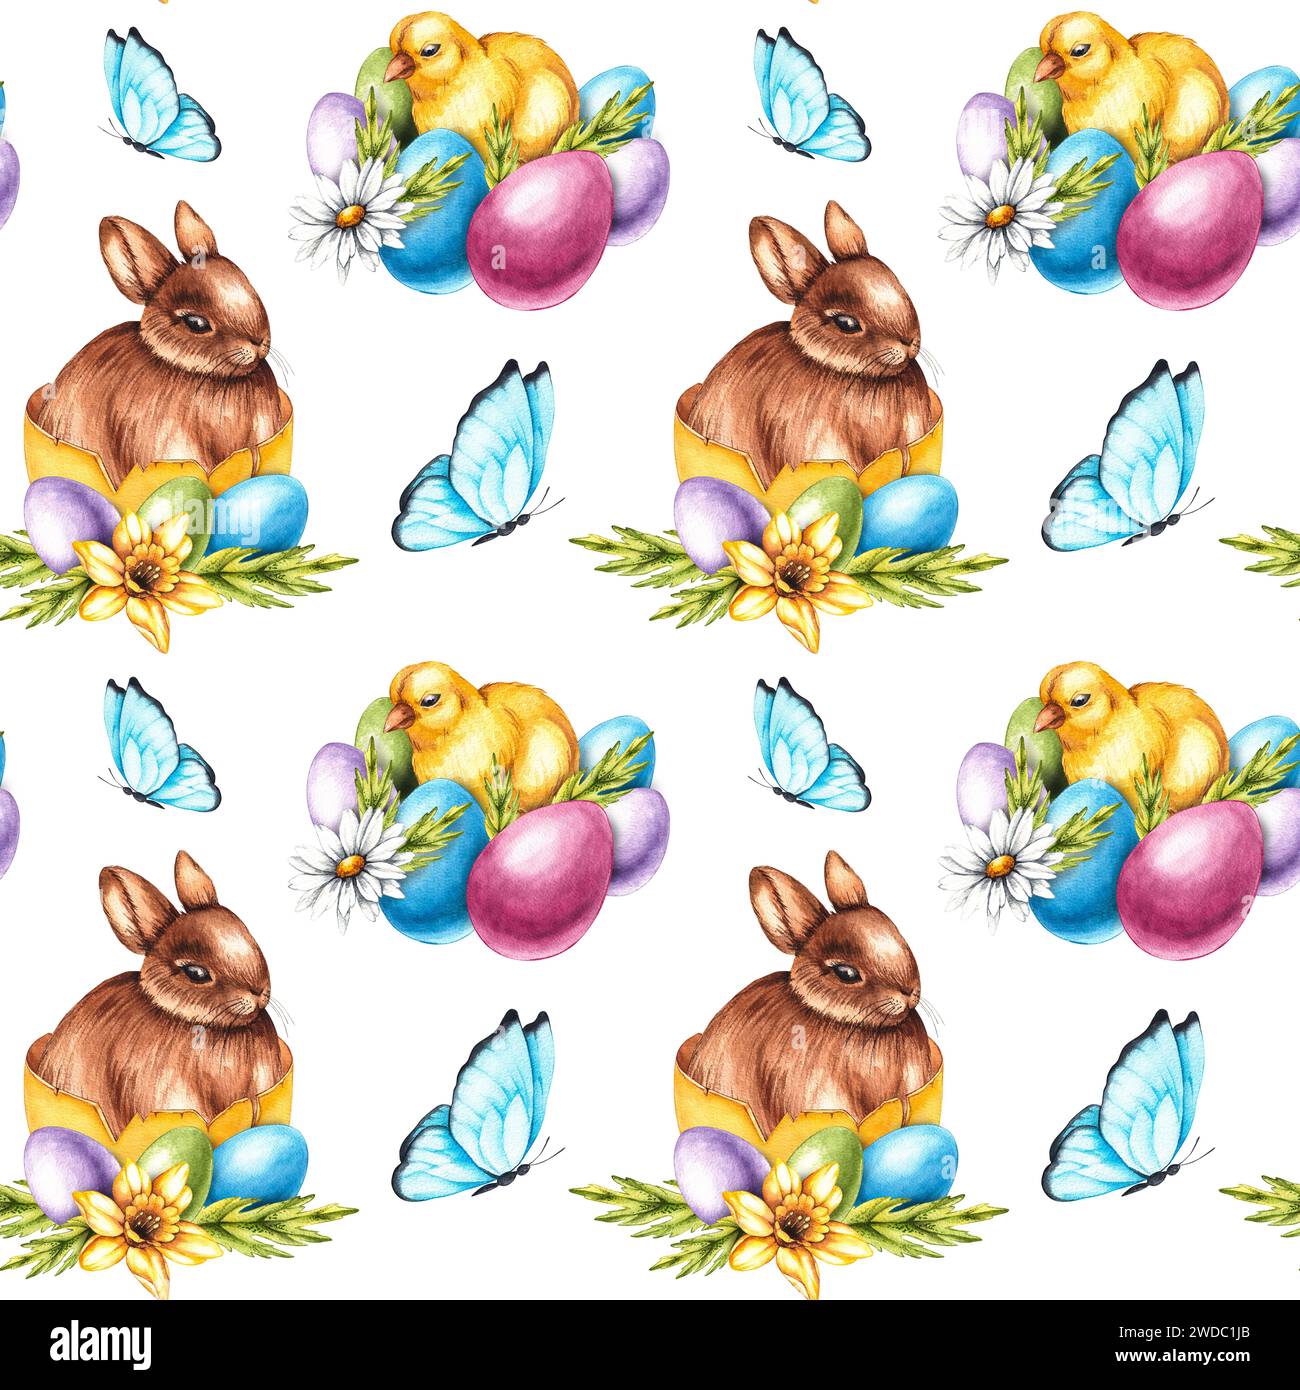 Aquarelle motif de Pâques avec lapins de Pâques et œufs. Aquarelle motif sans couture d'éléments dessinés à la main pour la conception de tissus, de papiers peints, d'autocollants Banque D'Images